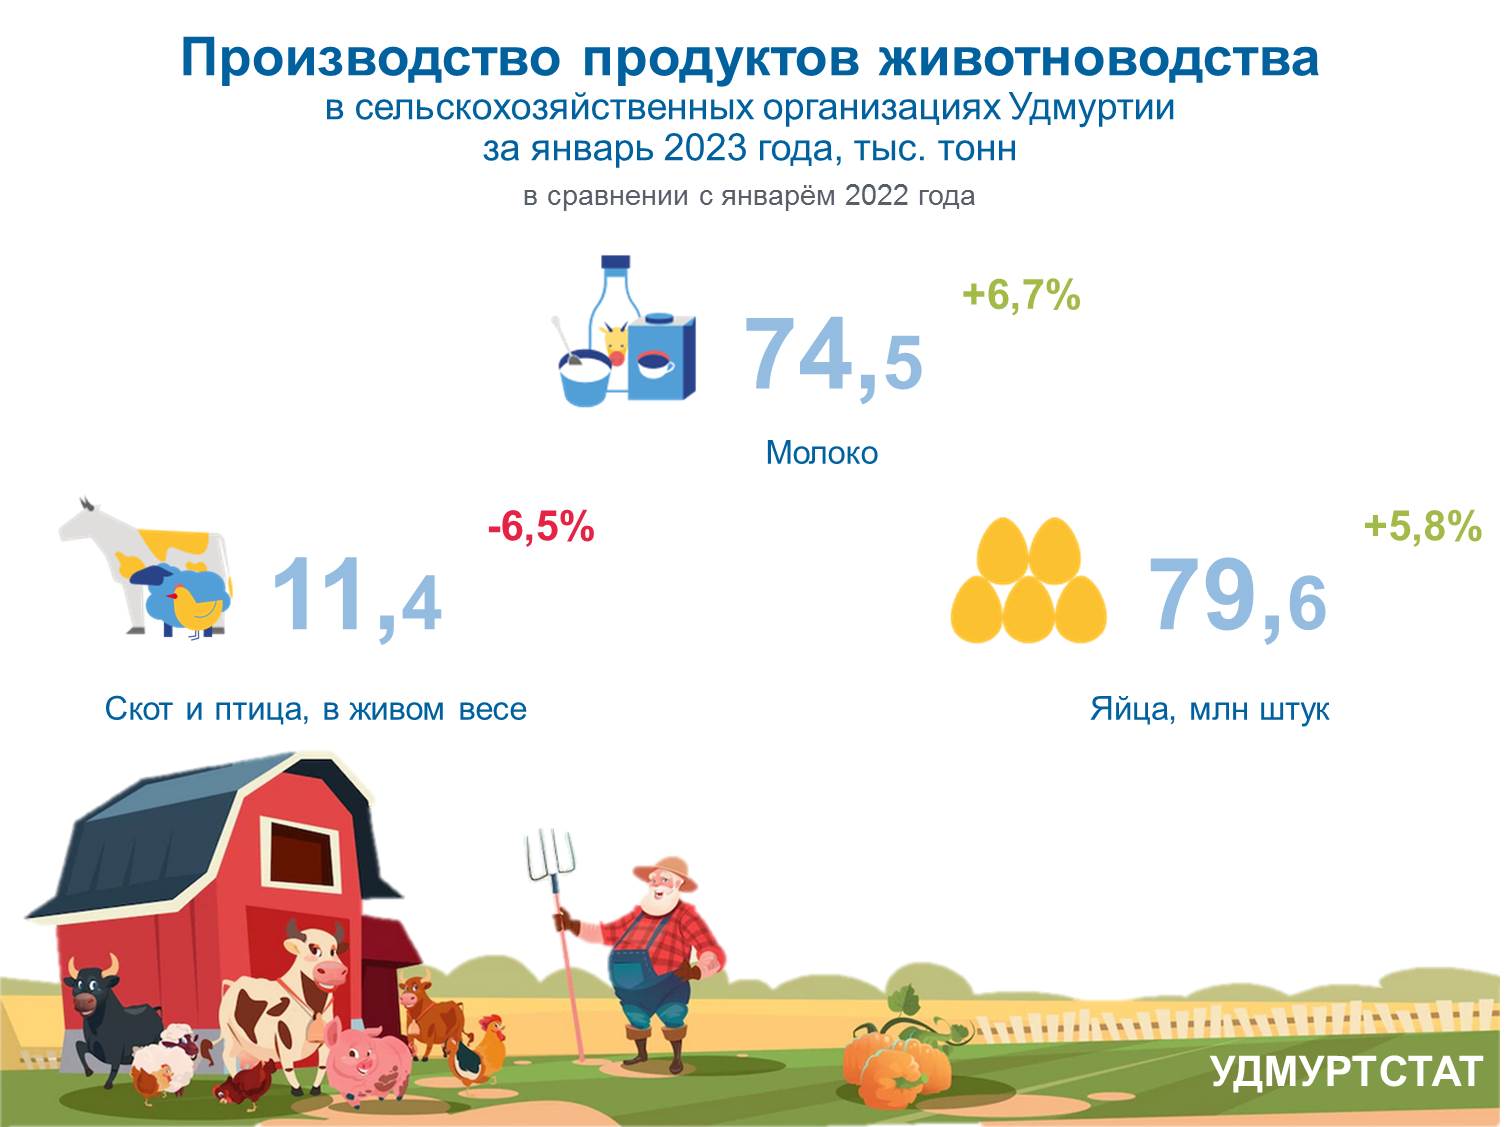 Производство продуктов животноводства за январь 2023 года.